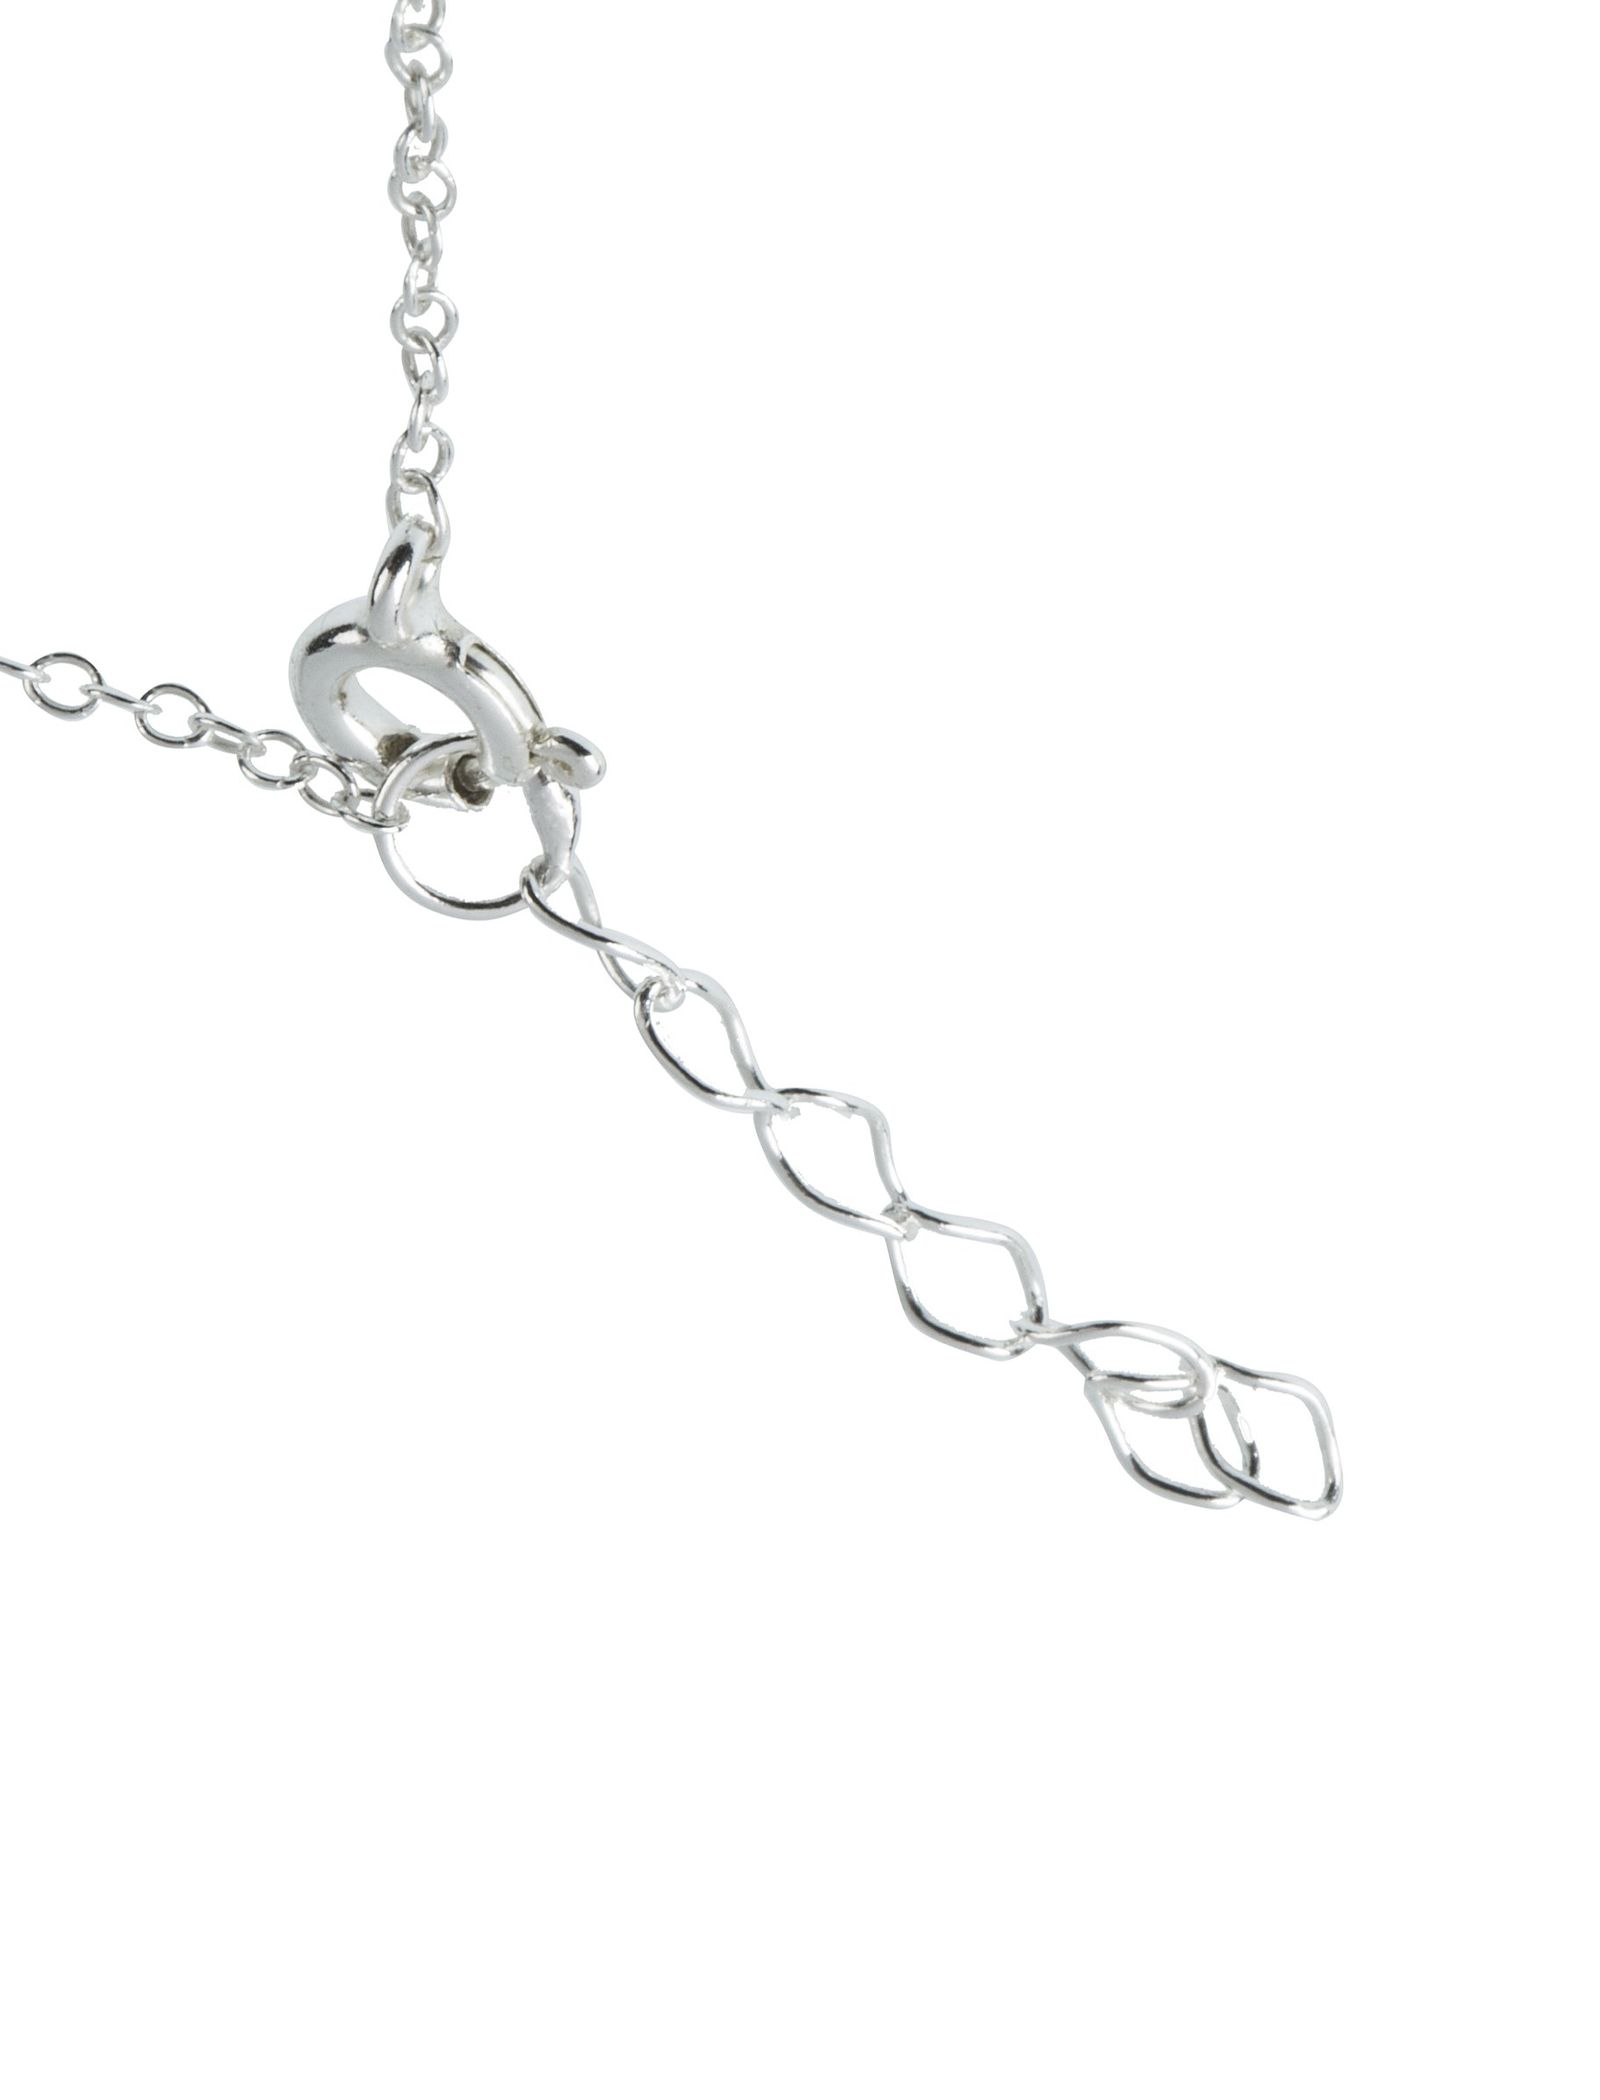 دستبند استیل قفل دار زنانه - اکسسورایز تک سایز - نقره اي - 4